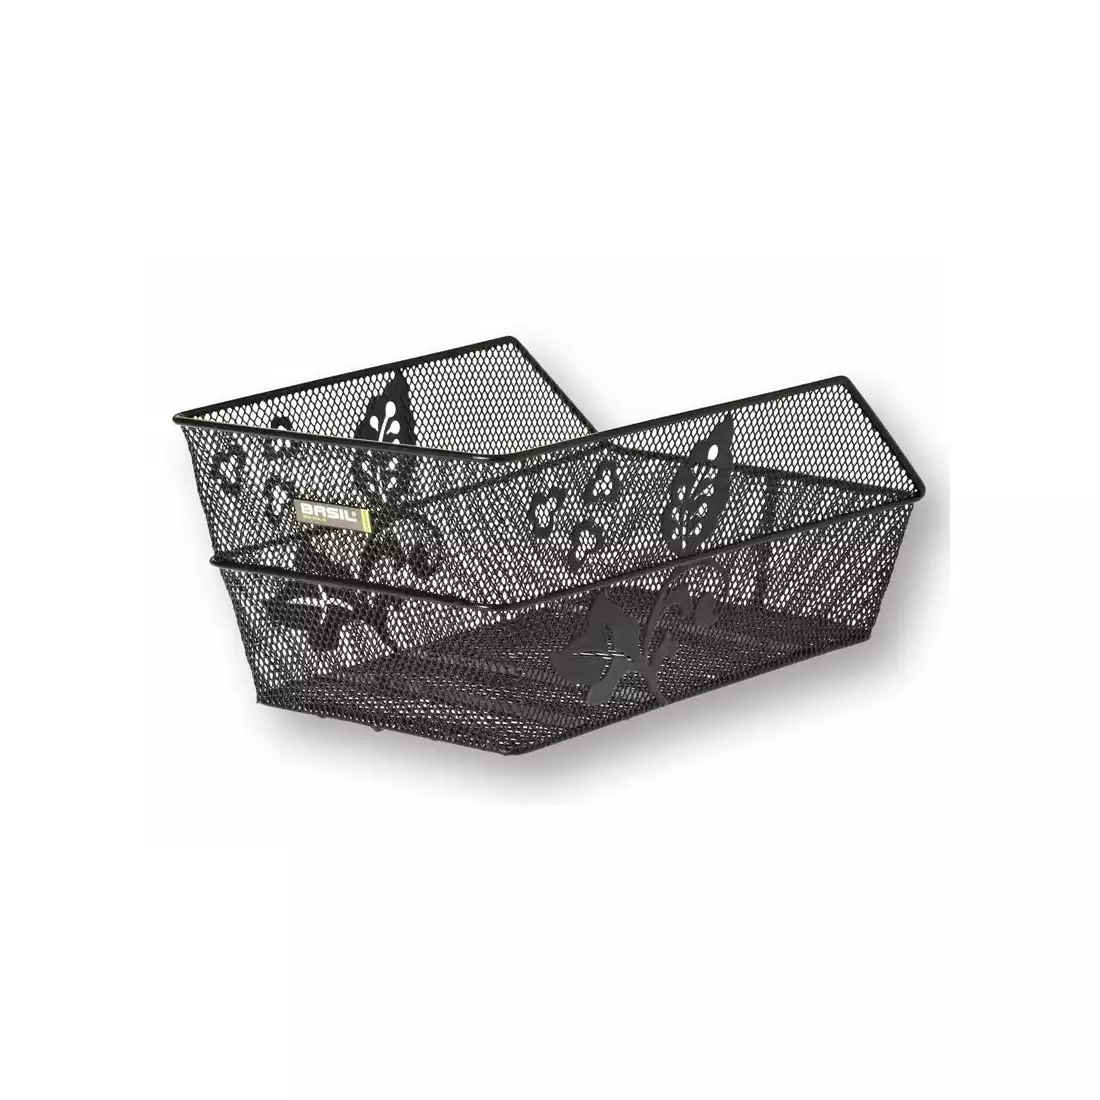 Kosz na tylny bagażnik BASIL CENTO FLOWER + Mounting set for CENTO basket, stalowy czarny BAS-11175